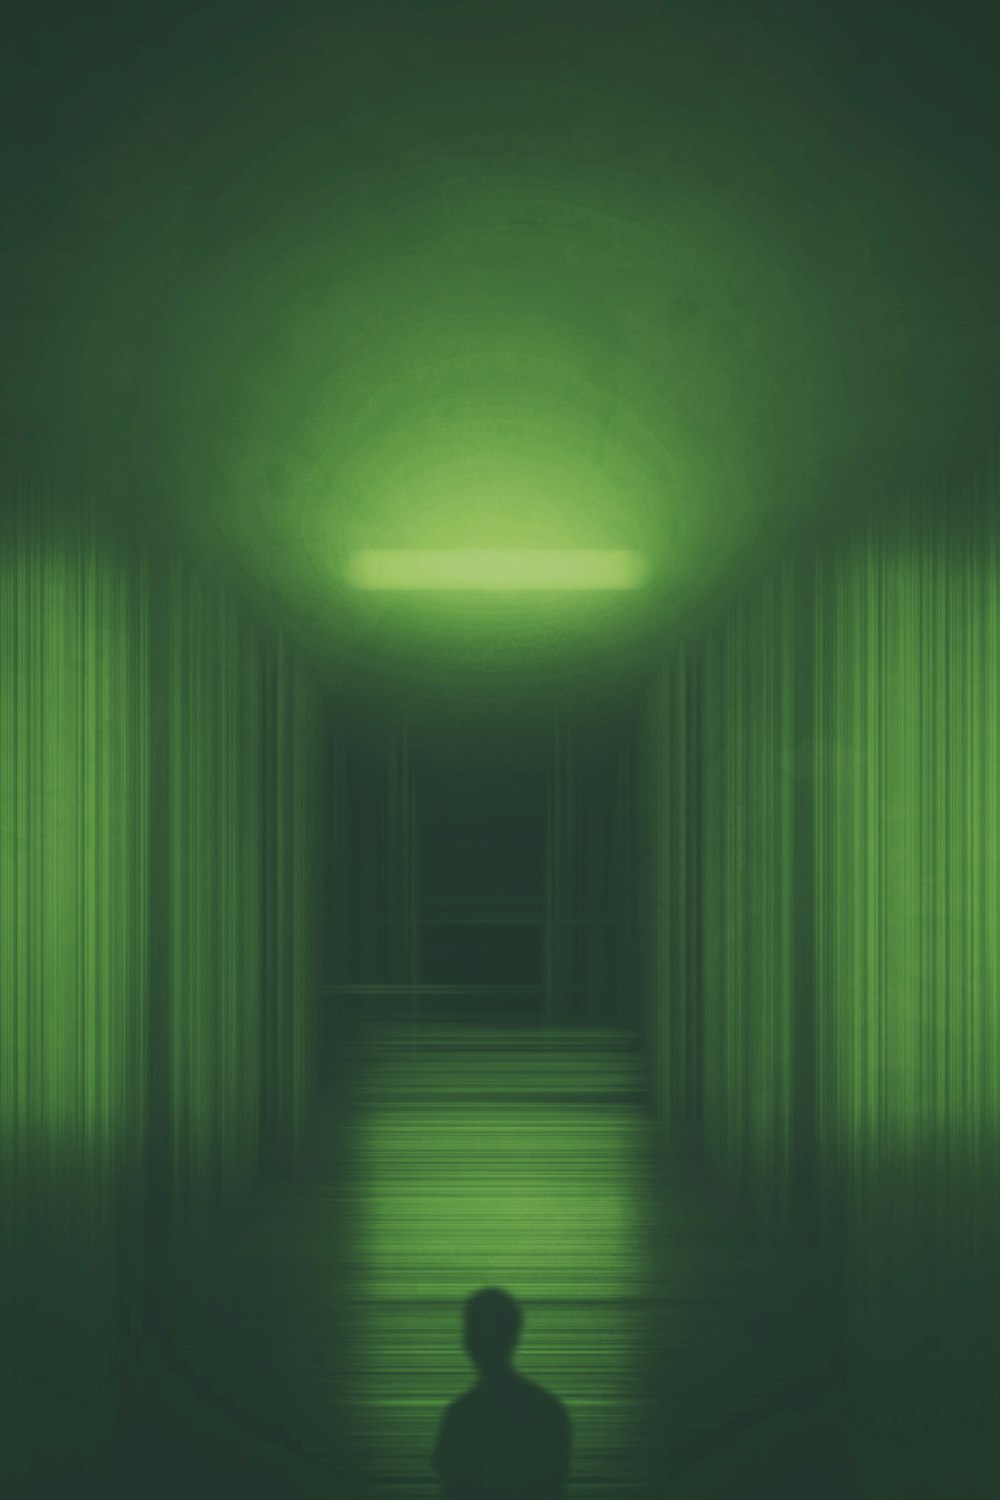 Eine Person, die in einem dunklen Raum mit grünem Licht steht